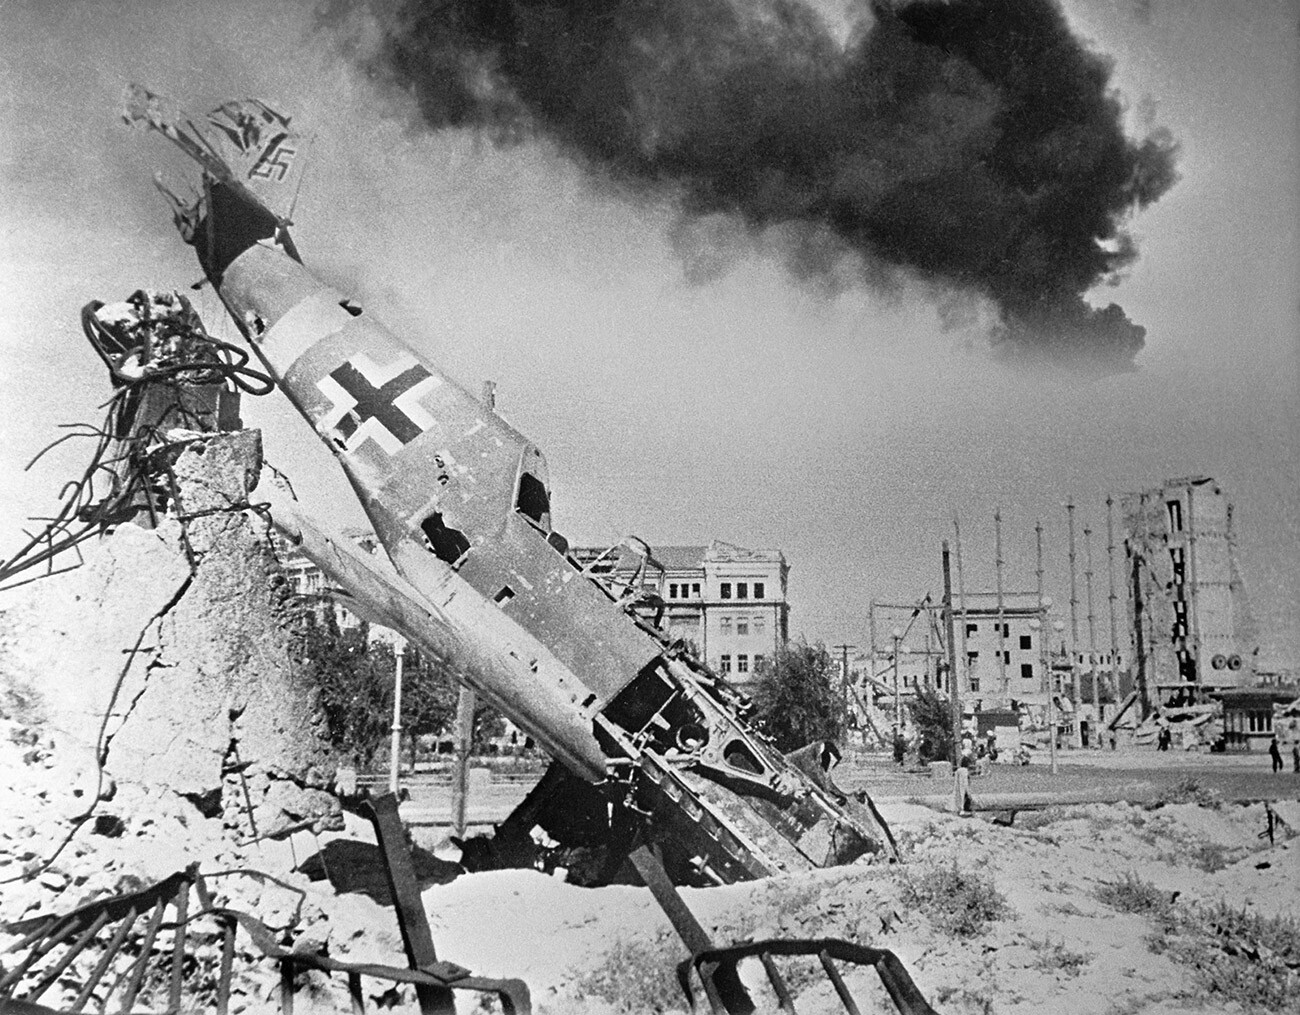 Rusija/Nemčija: Med ruševinami Stalingrada leži sestreljeni nemški lovec (Me 109). Med obleganjem mesta v letih 1942-1943 so se nad njim odvijali veliki zračni boji 